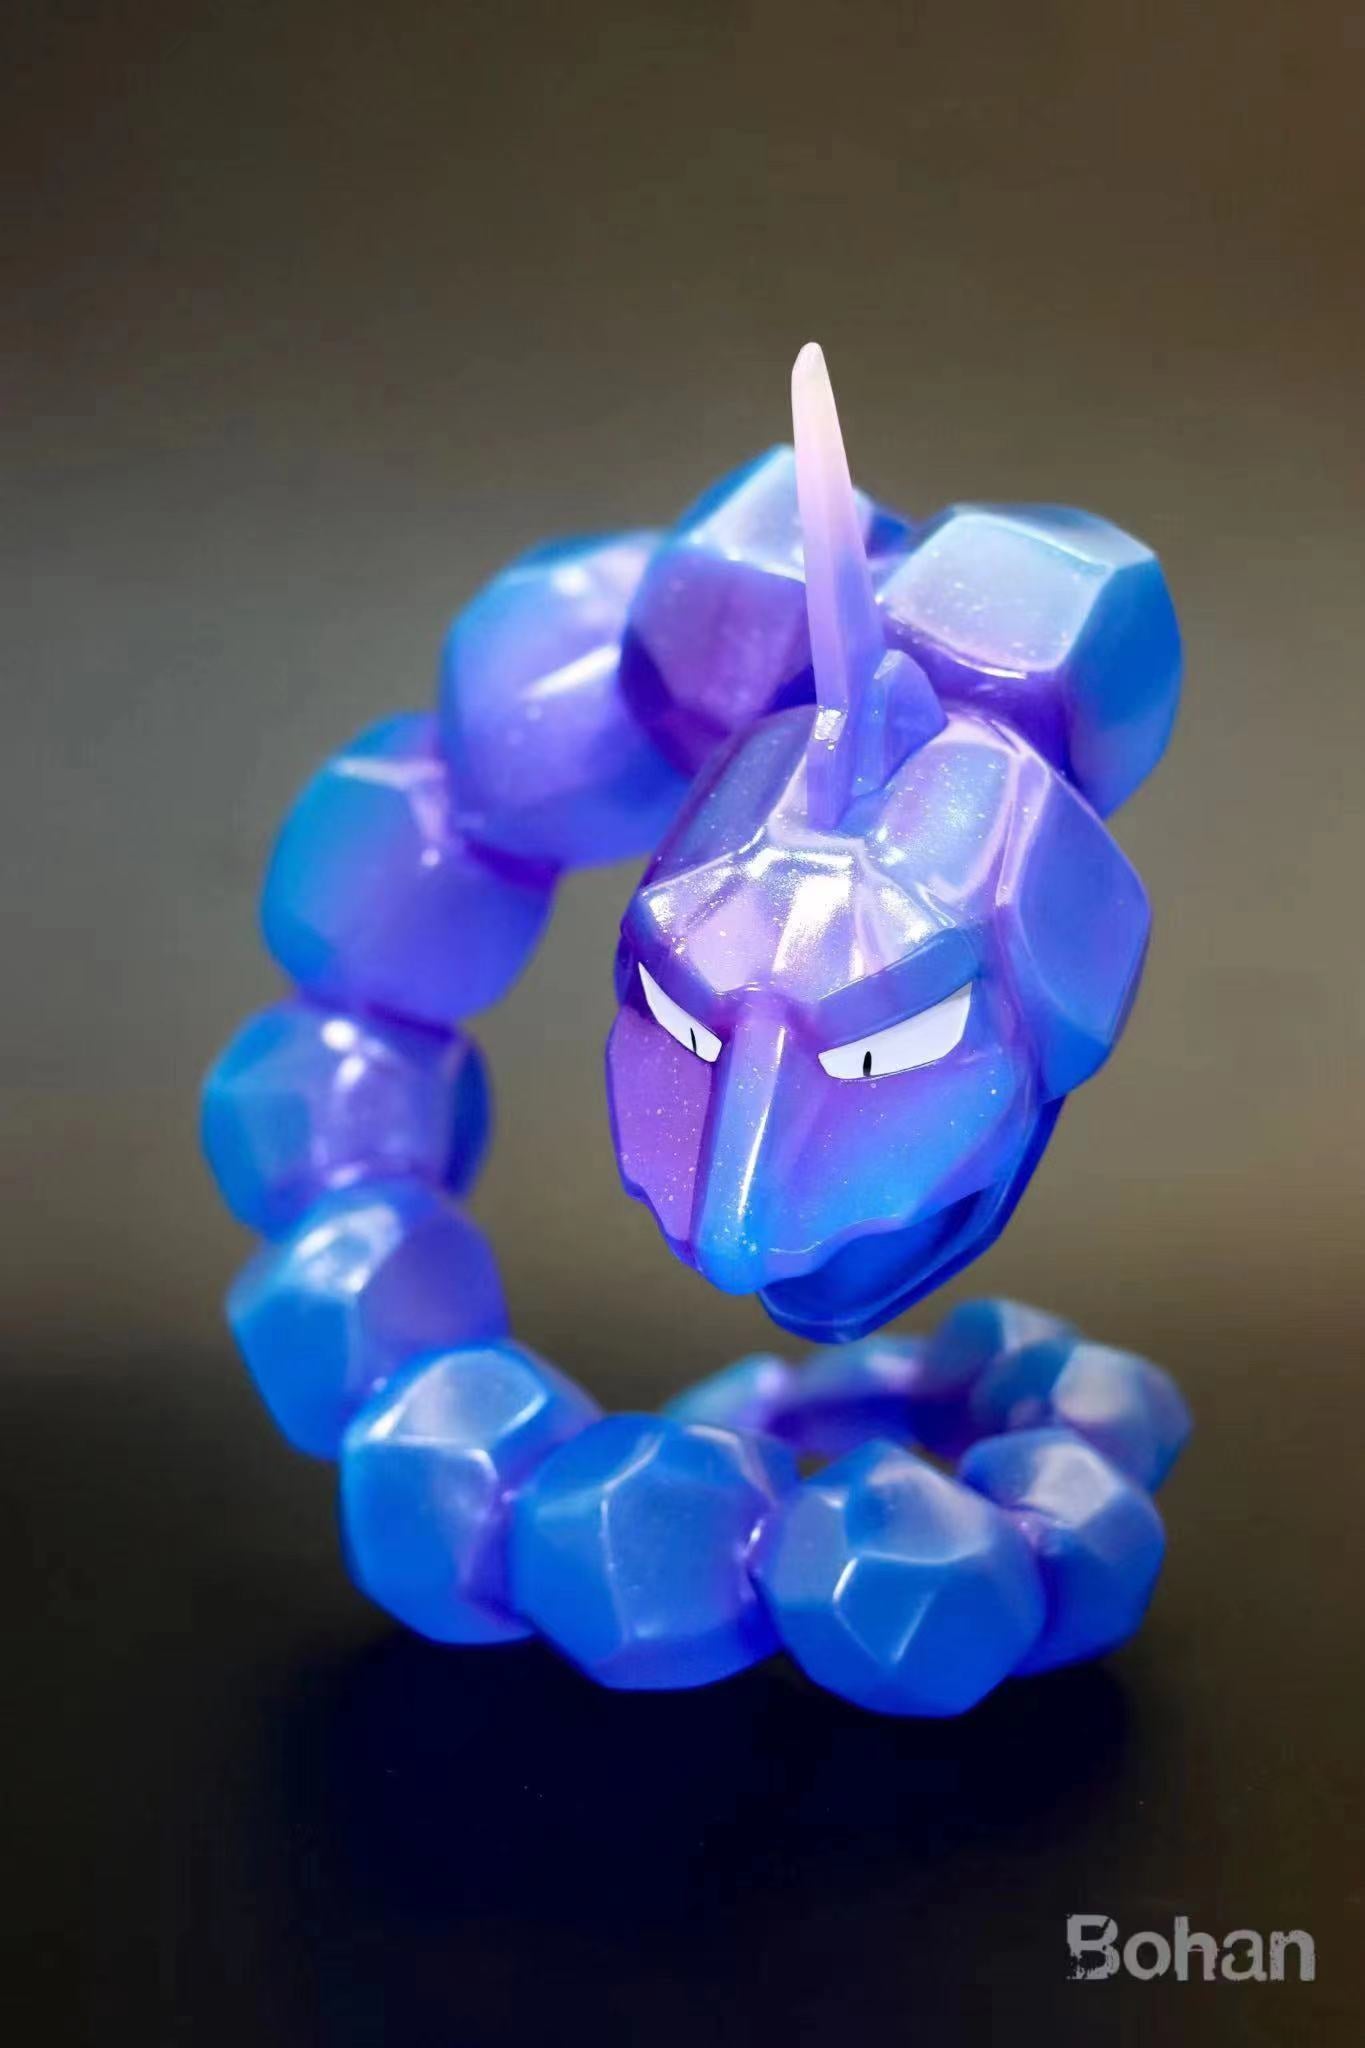 Pokémon - (095) Crystal Onix